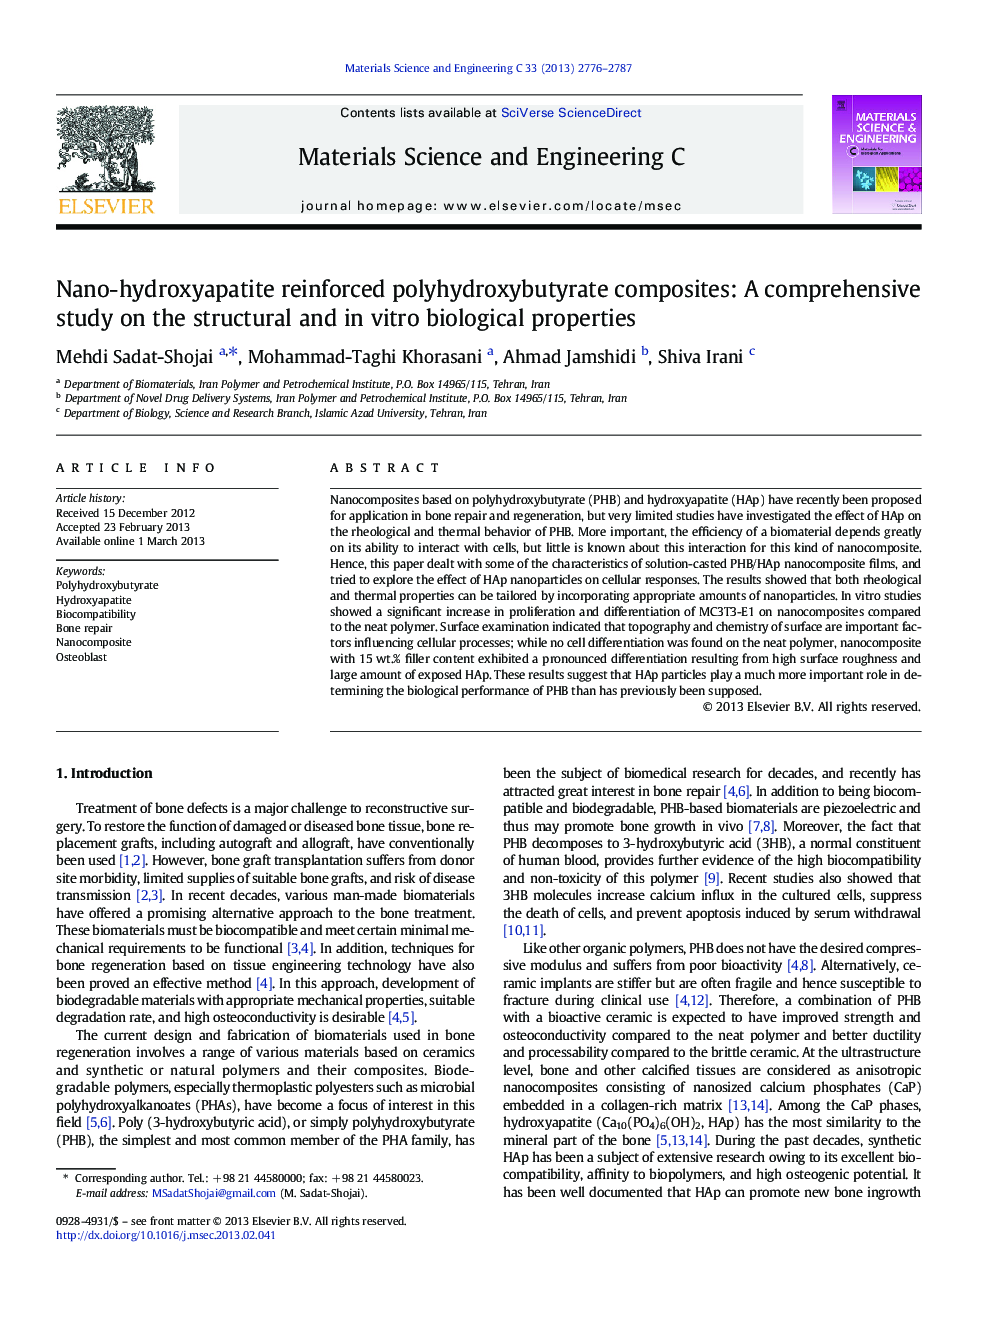 کامپوزیت پلی هیدروکسی بوتیرات تقویت شده با نانو هیدروکسی آپاتیت: یک مطالعه جامع در مورد خواص بیولوژیکی ساختاری و آزمایشگاهی 